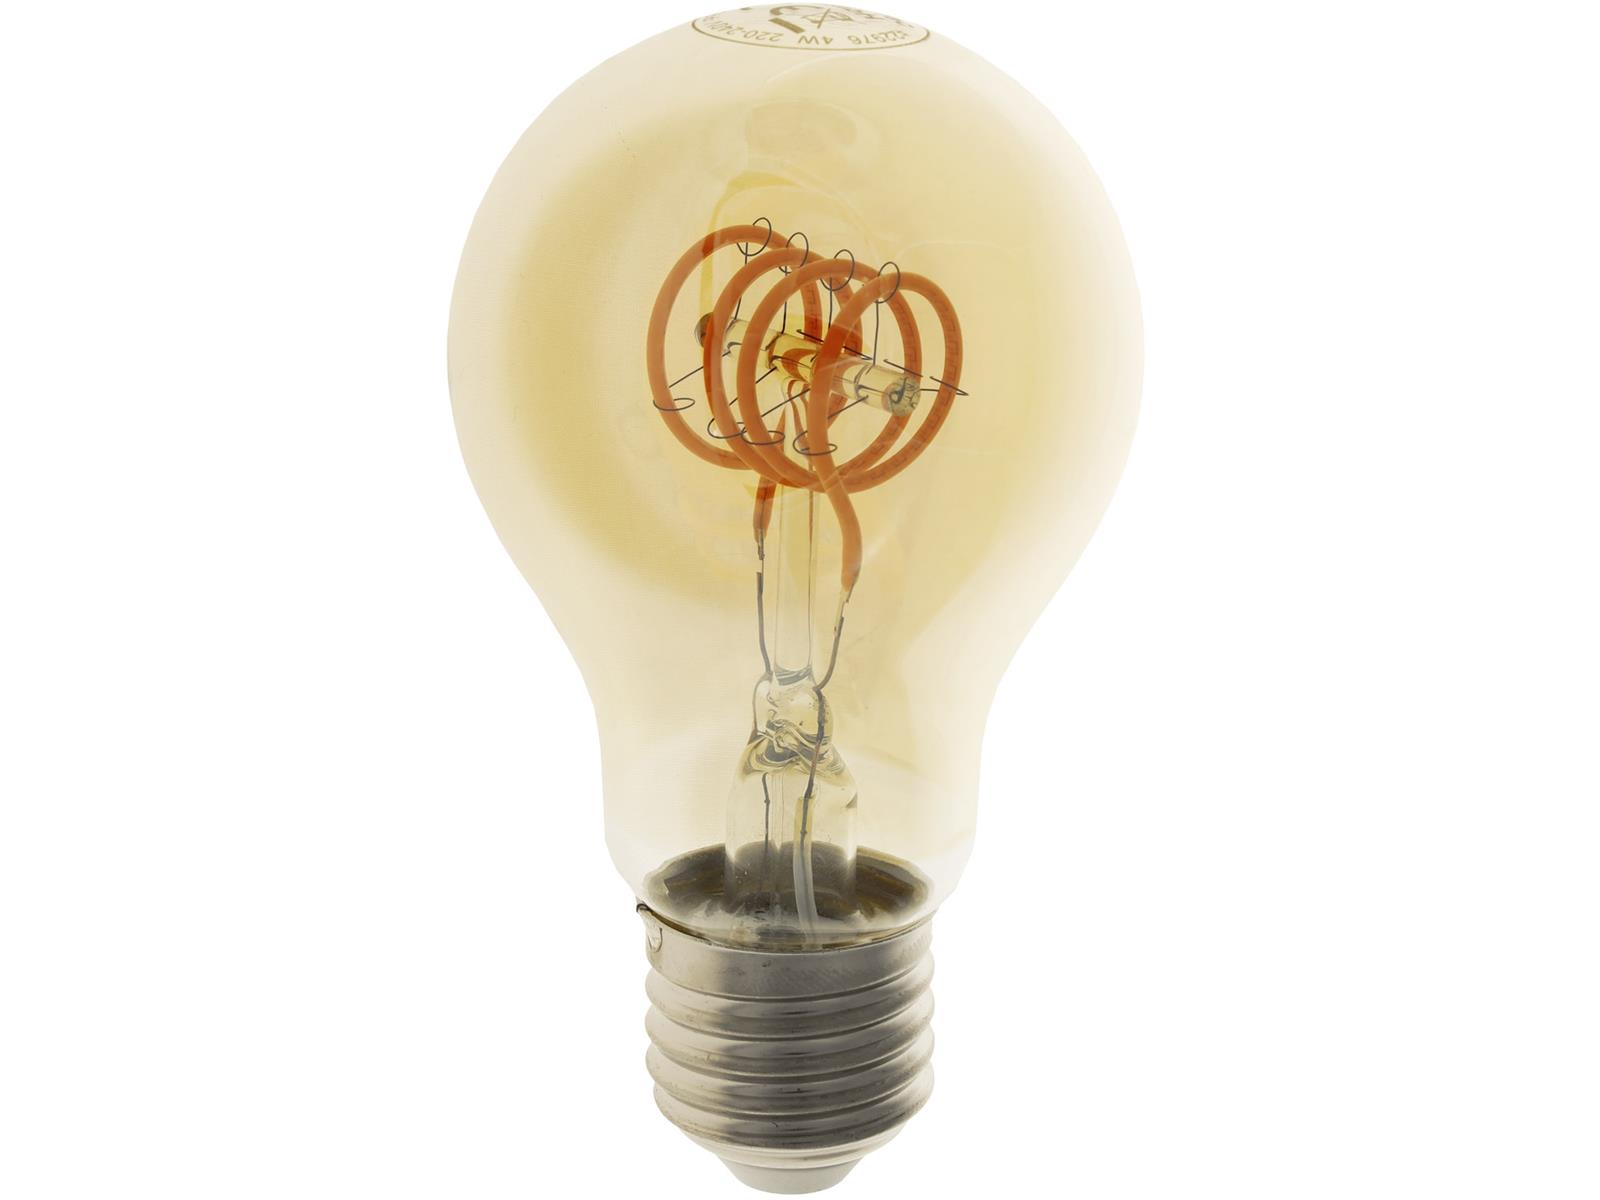 LED Glühlampe E27 "Vintage G70" 2200k, 249lm, 230V/4W, warmweiß/amber